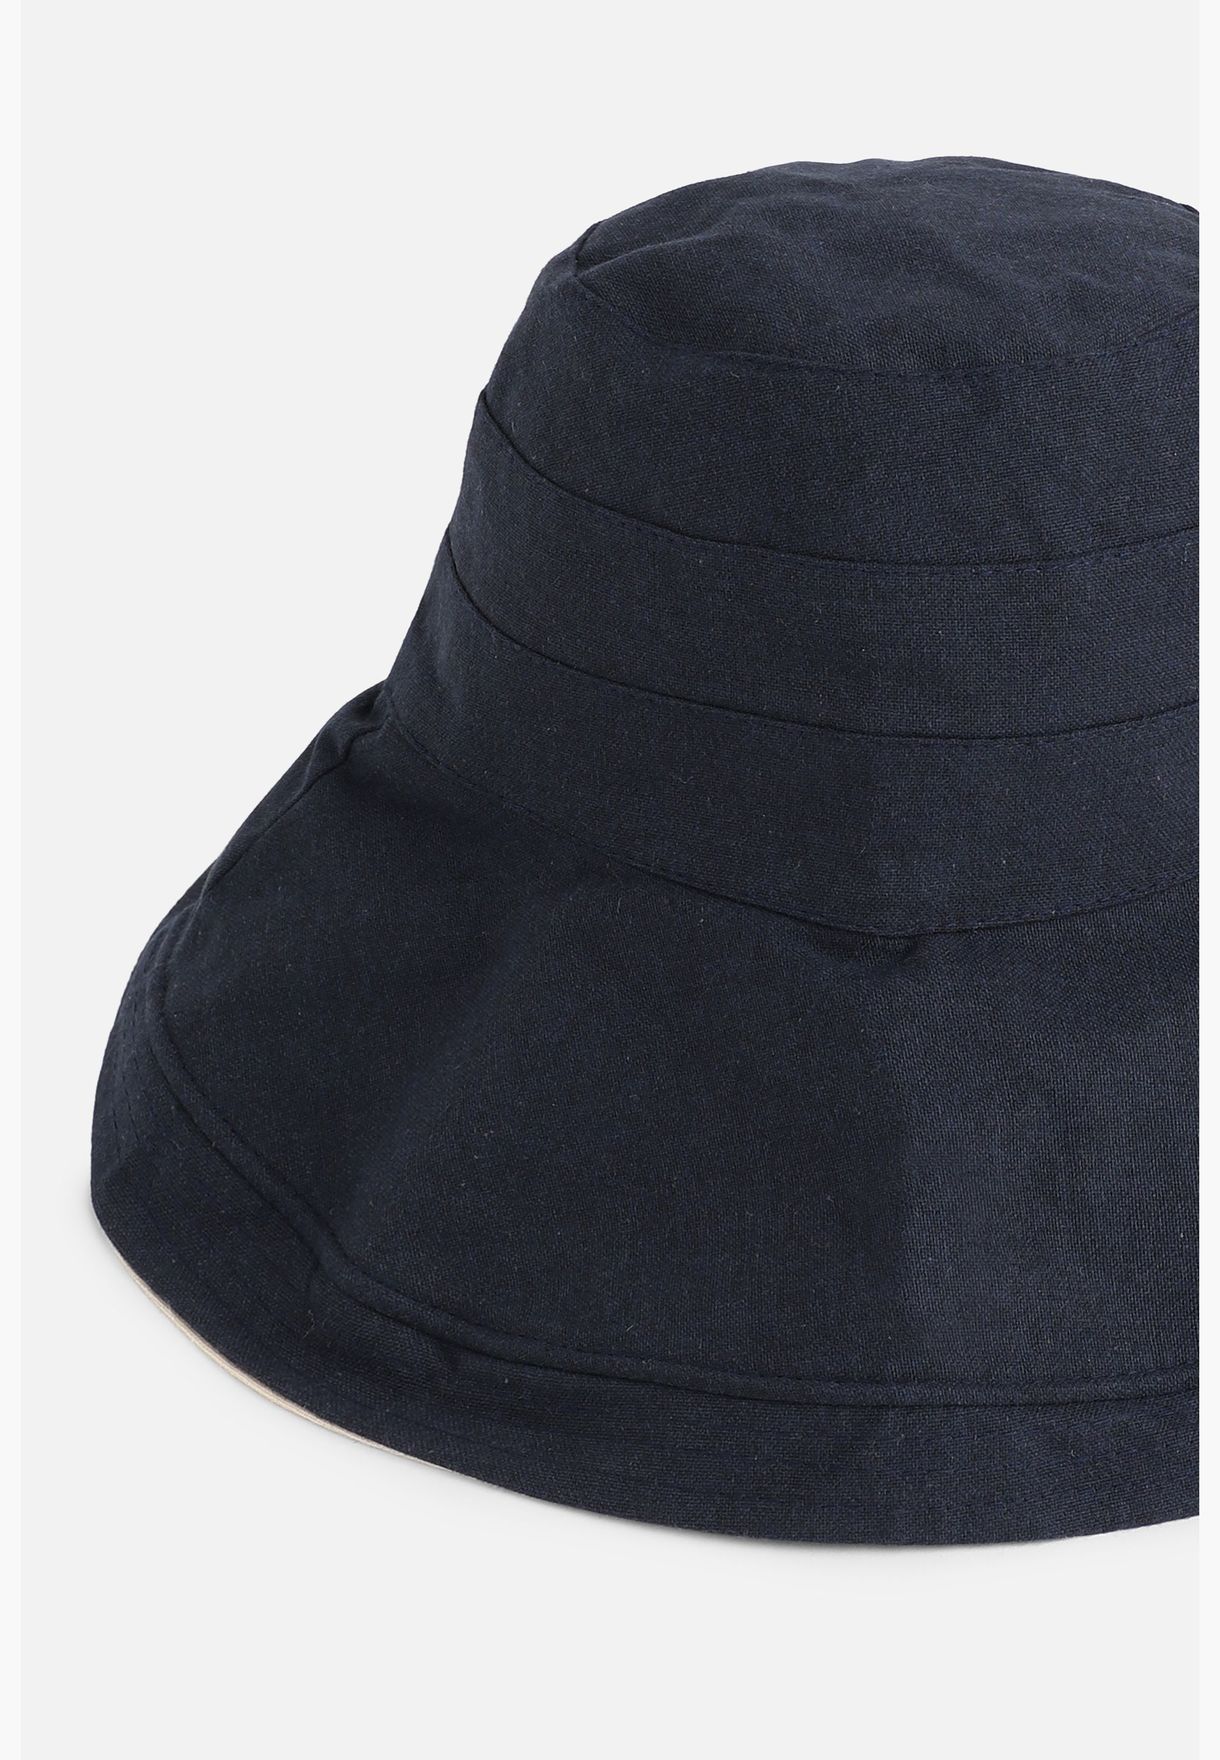 قبعة بنمط دلو كاجوال بالتصميم سادة من البوليستر للرجال